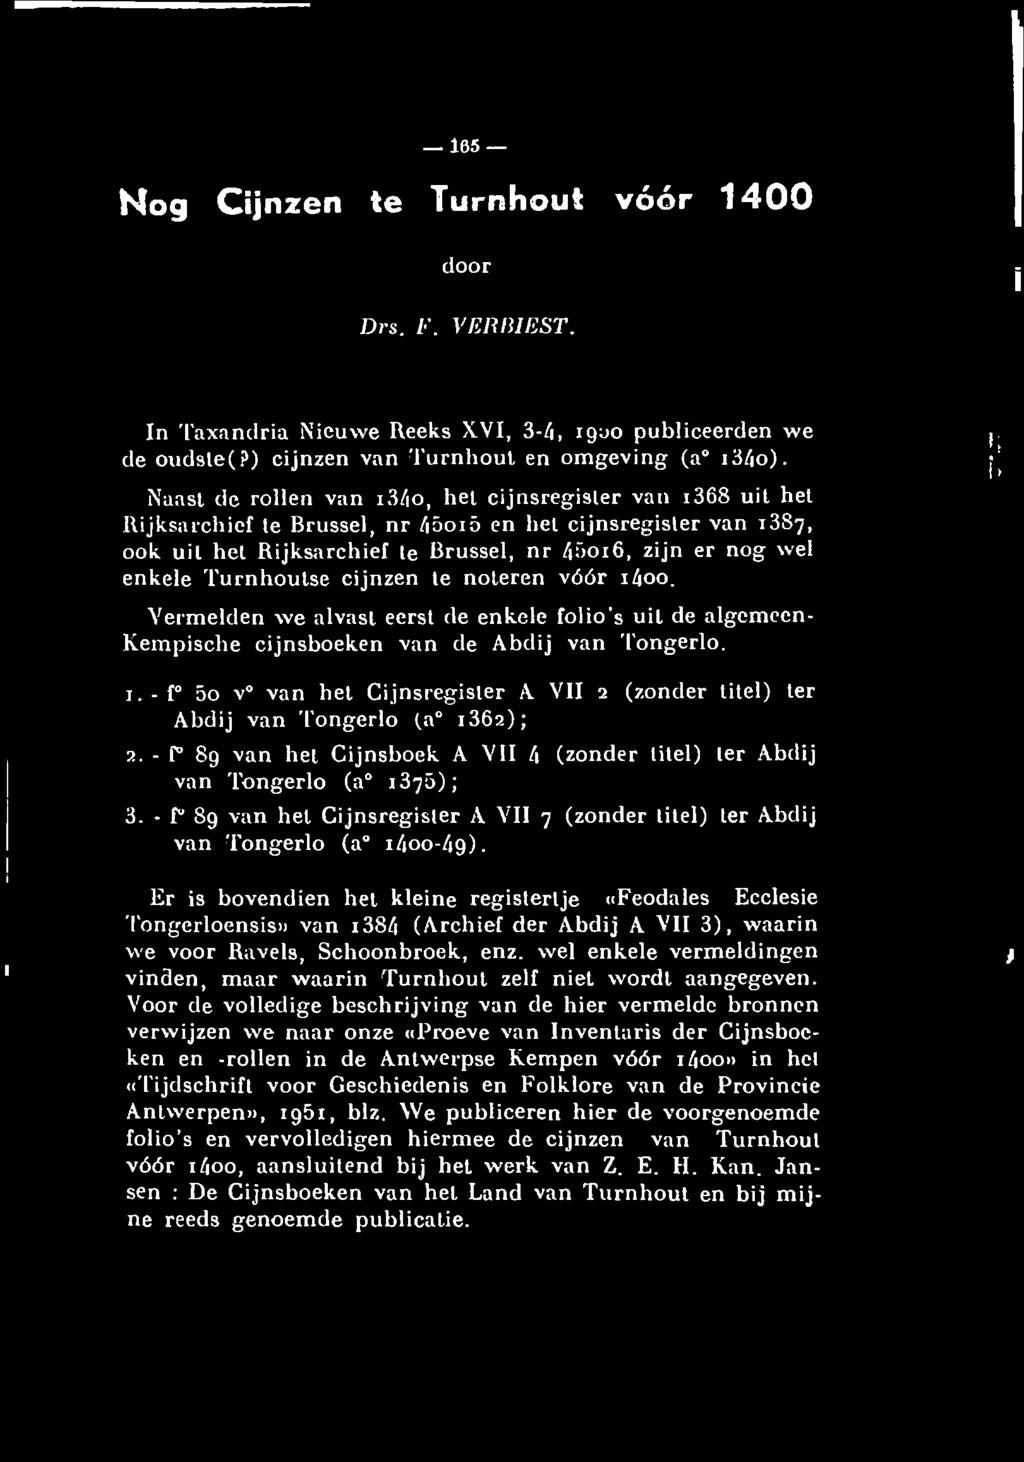 Turnhoutse cijnzen te noteren vóór 1600. Vermelden we alvast eerst de enkele folio s uil de algemeen- Kempische cijnsboeken van de Abdij van Tongerlo. r L' I i.